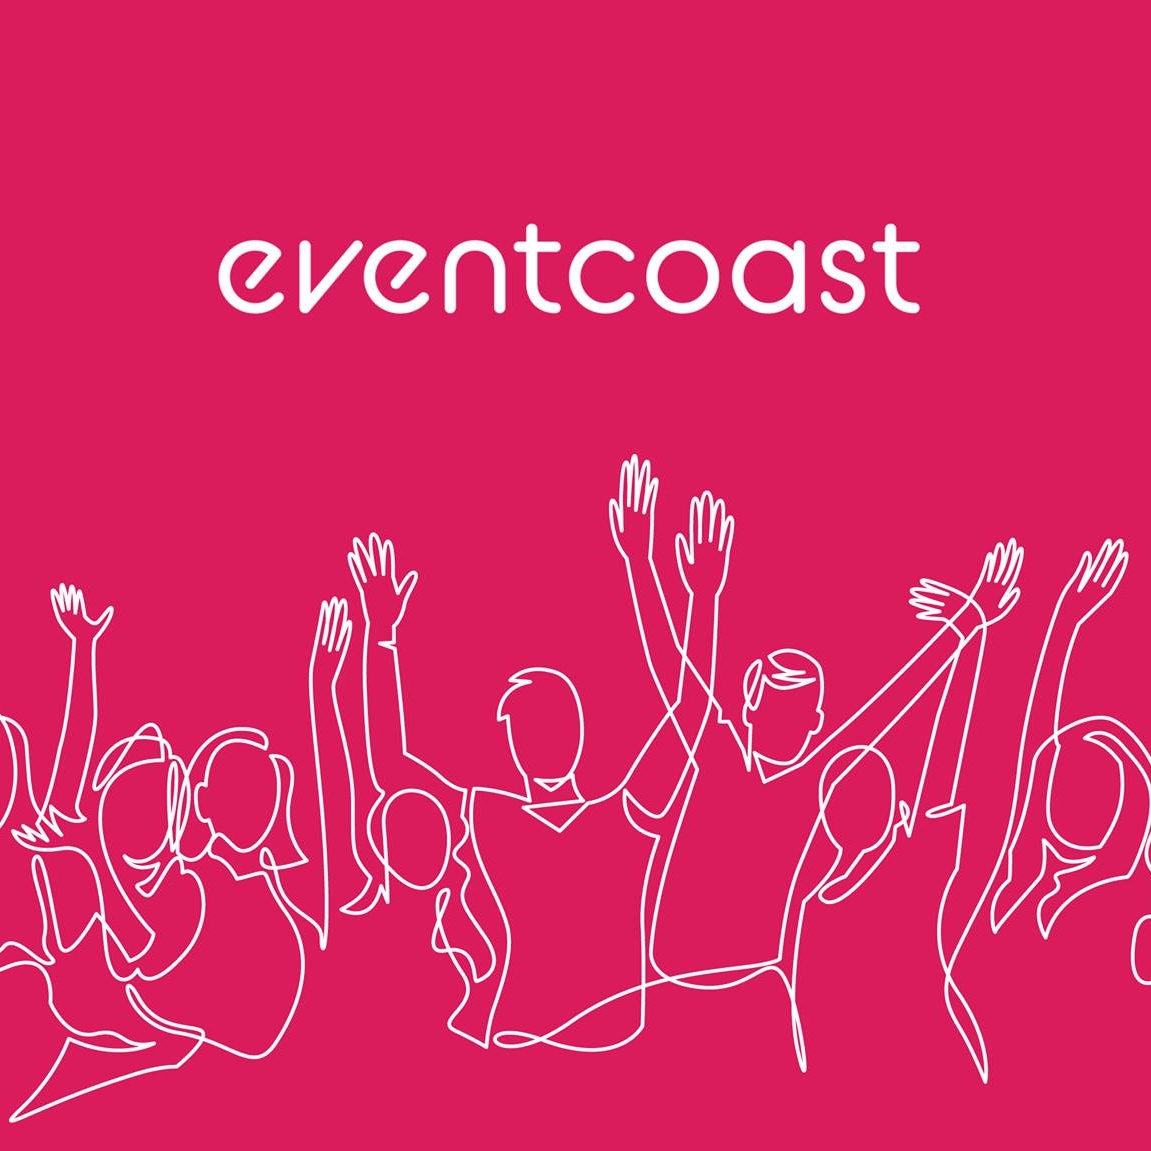 Eventcoast / Prizztech mukana rekryboost 2023 matkailu, majoitus- ja ravintola-alan rekrymessuilla